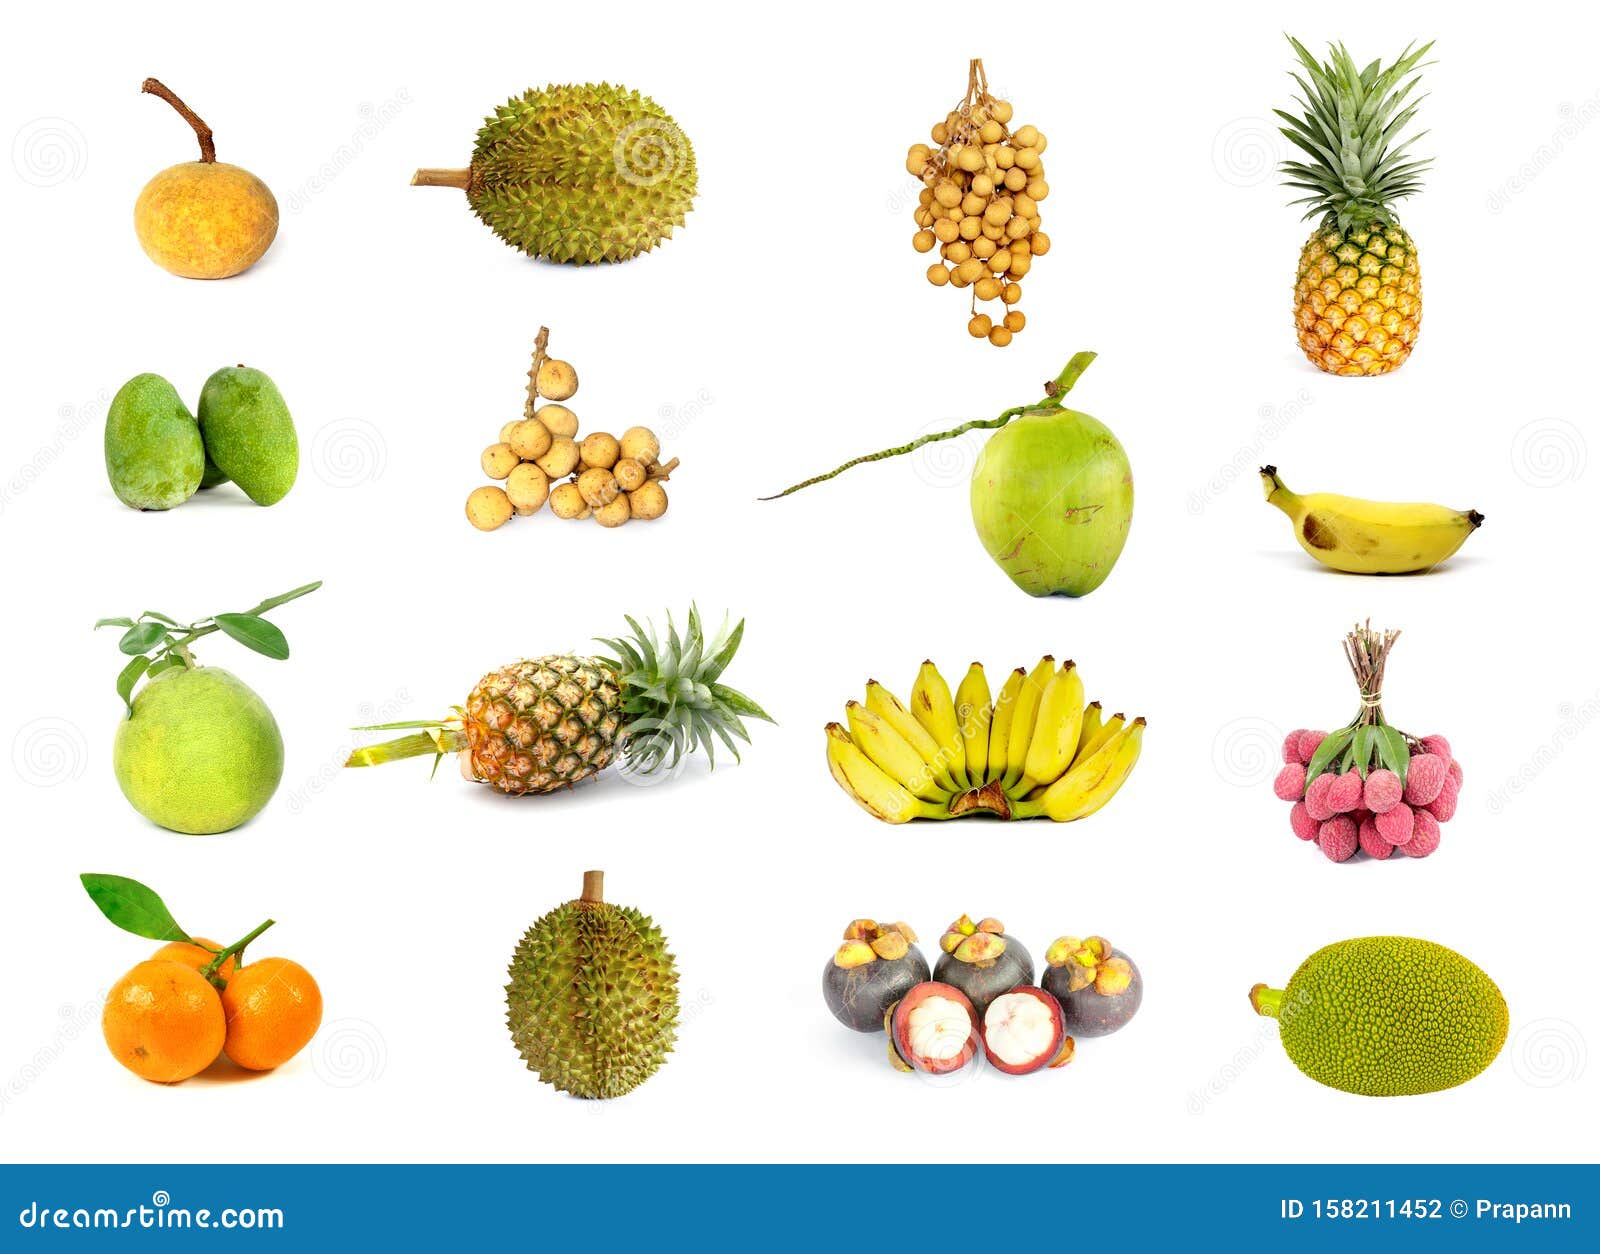 健康的泰国热带水果 库存照片. 图片 包括有 黄色, 上色, 充满活力, 医学, 泰国, 健康, 楼梯栏杆 - 49891664